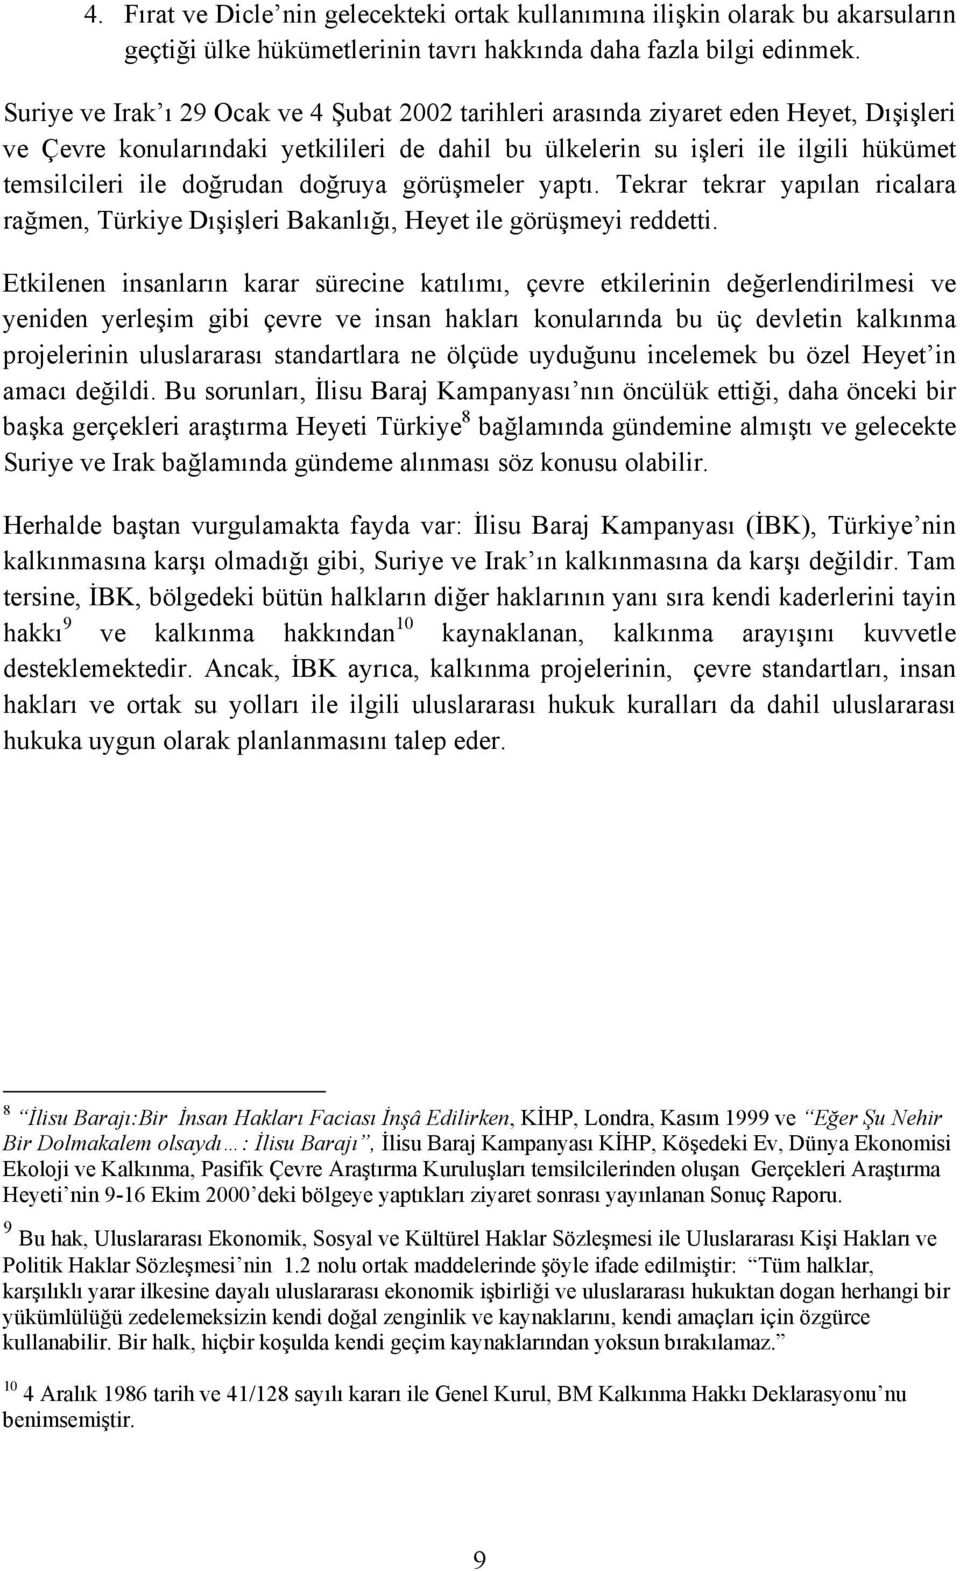 doğrudan doğruya görüşmeler yaptõ. Tekrar tekrar yapõlan ricalara rağmen, Türkiye Dõşişleri Bakanlõğõ, Heyet ile görüşmeyi reddetti.